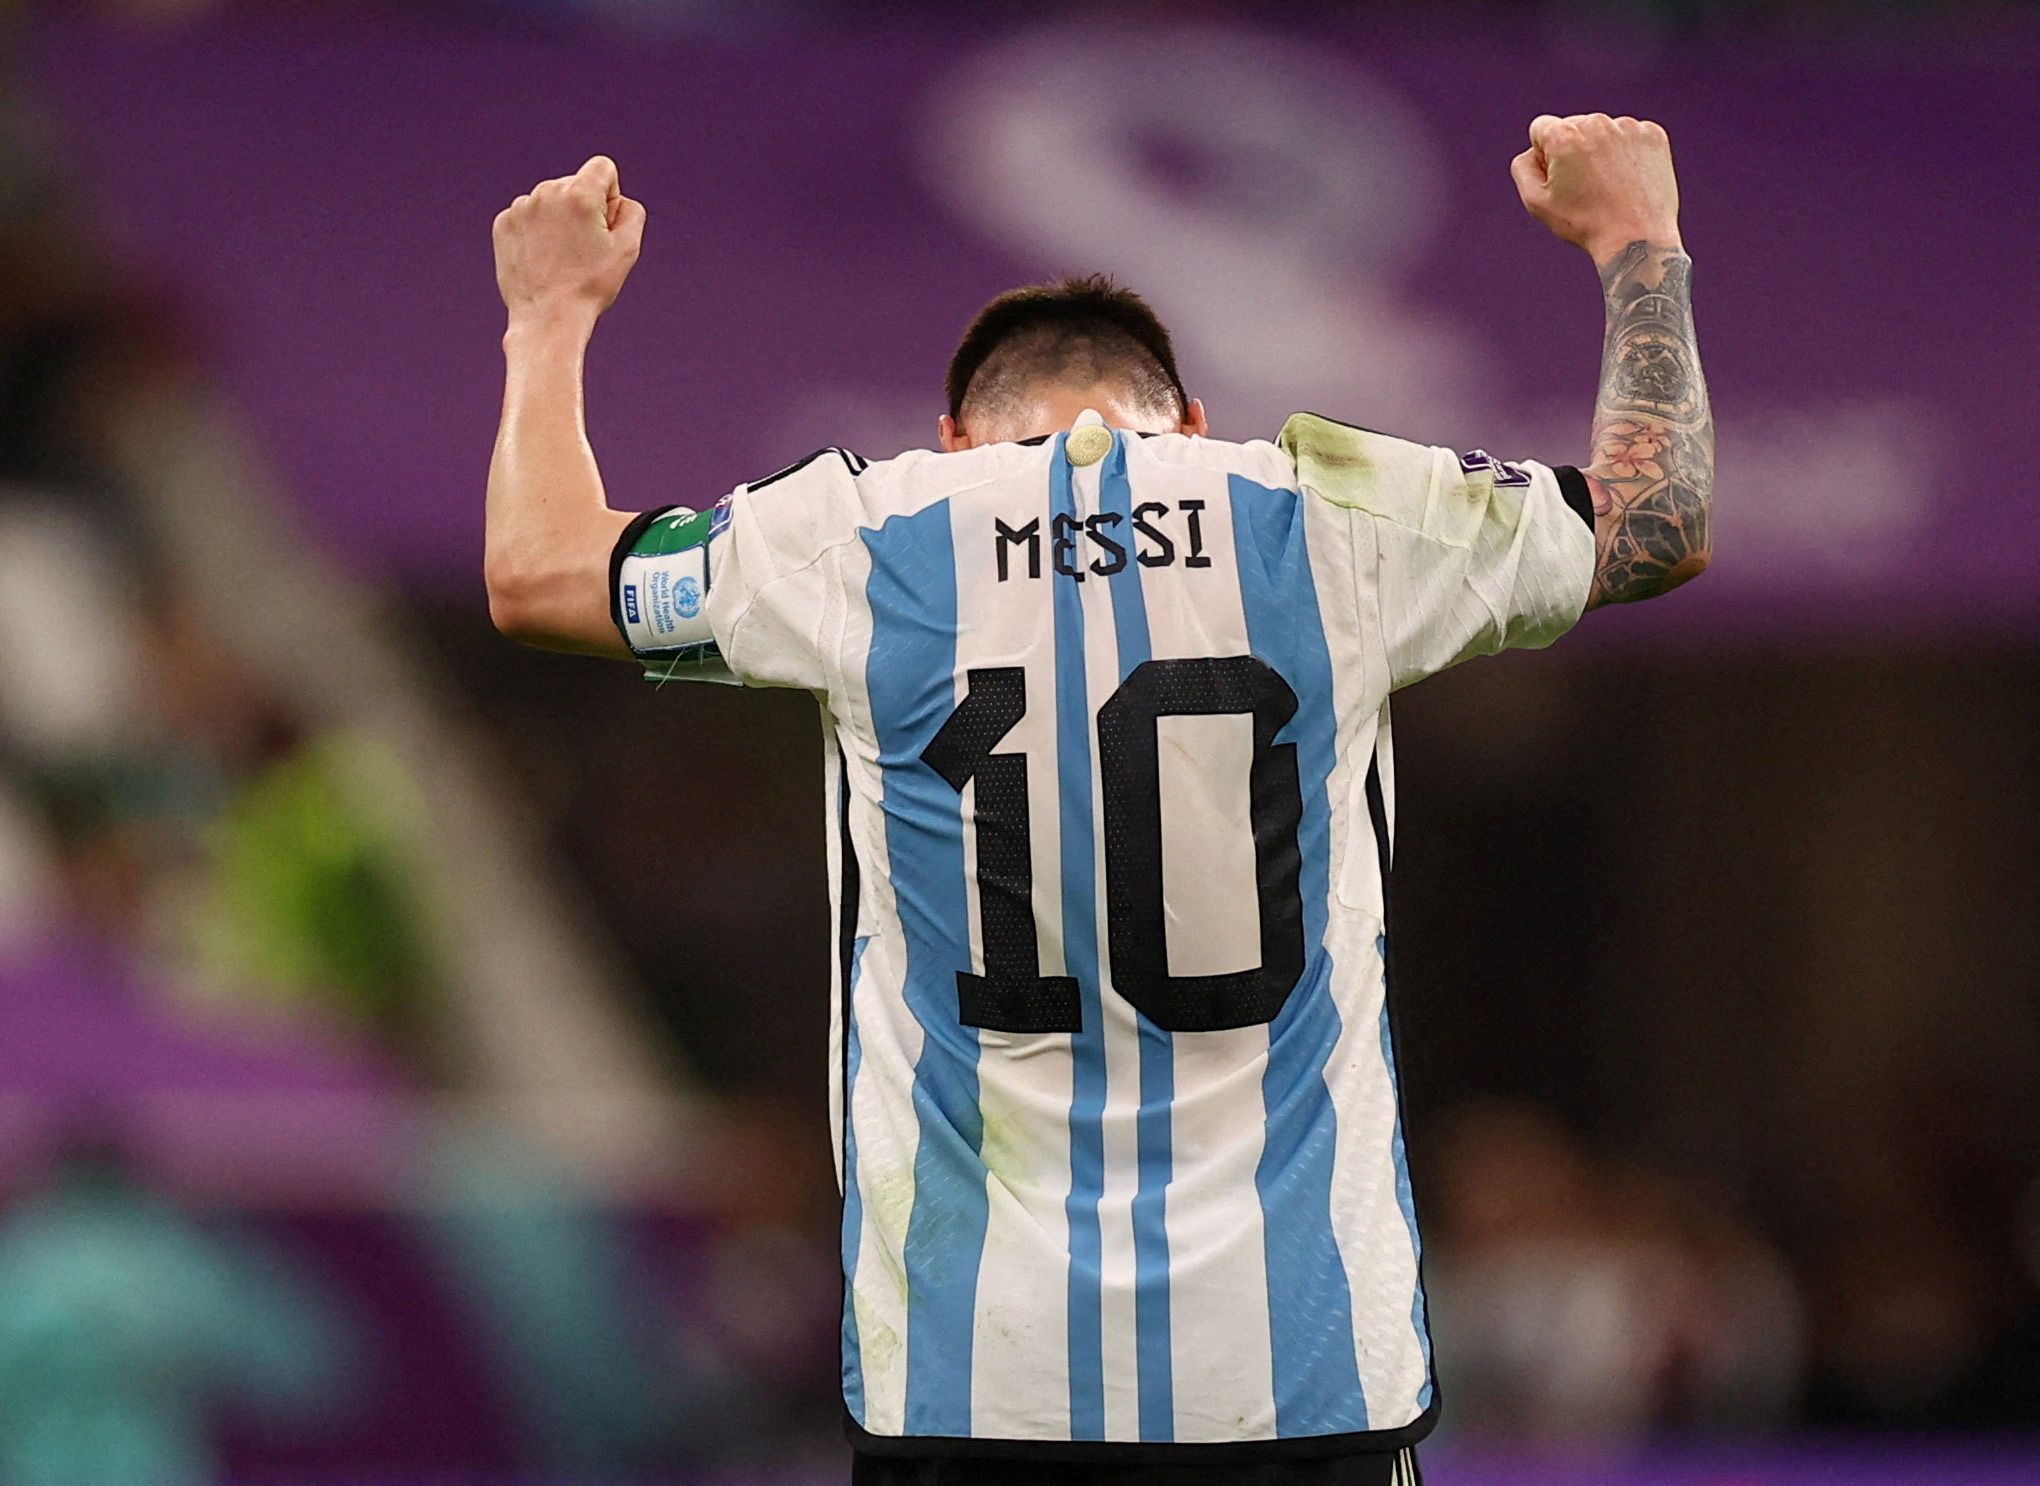 Mondiali Qatar 2022, i pronostici del Moro: Lionel Messi quinto gol e l’Argentina vola in finale